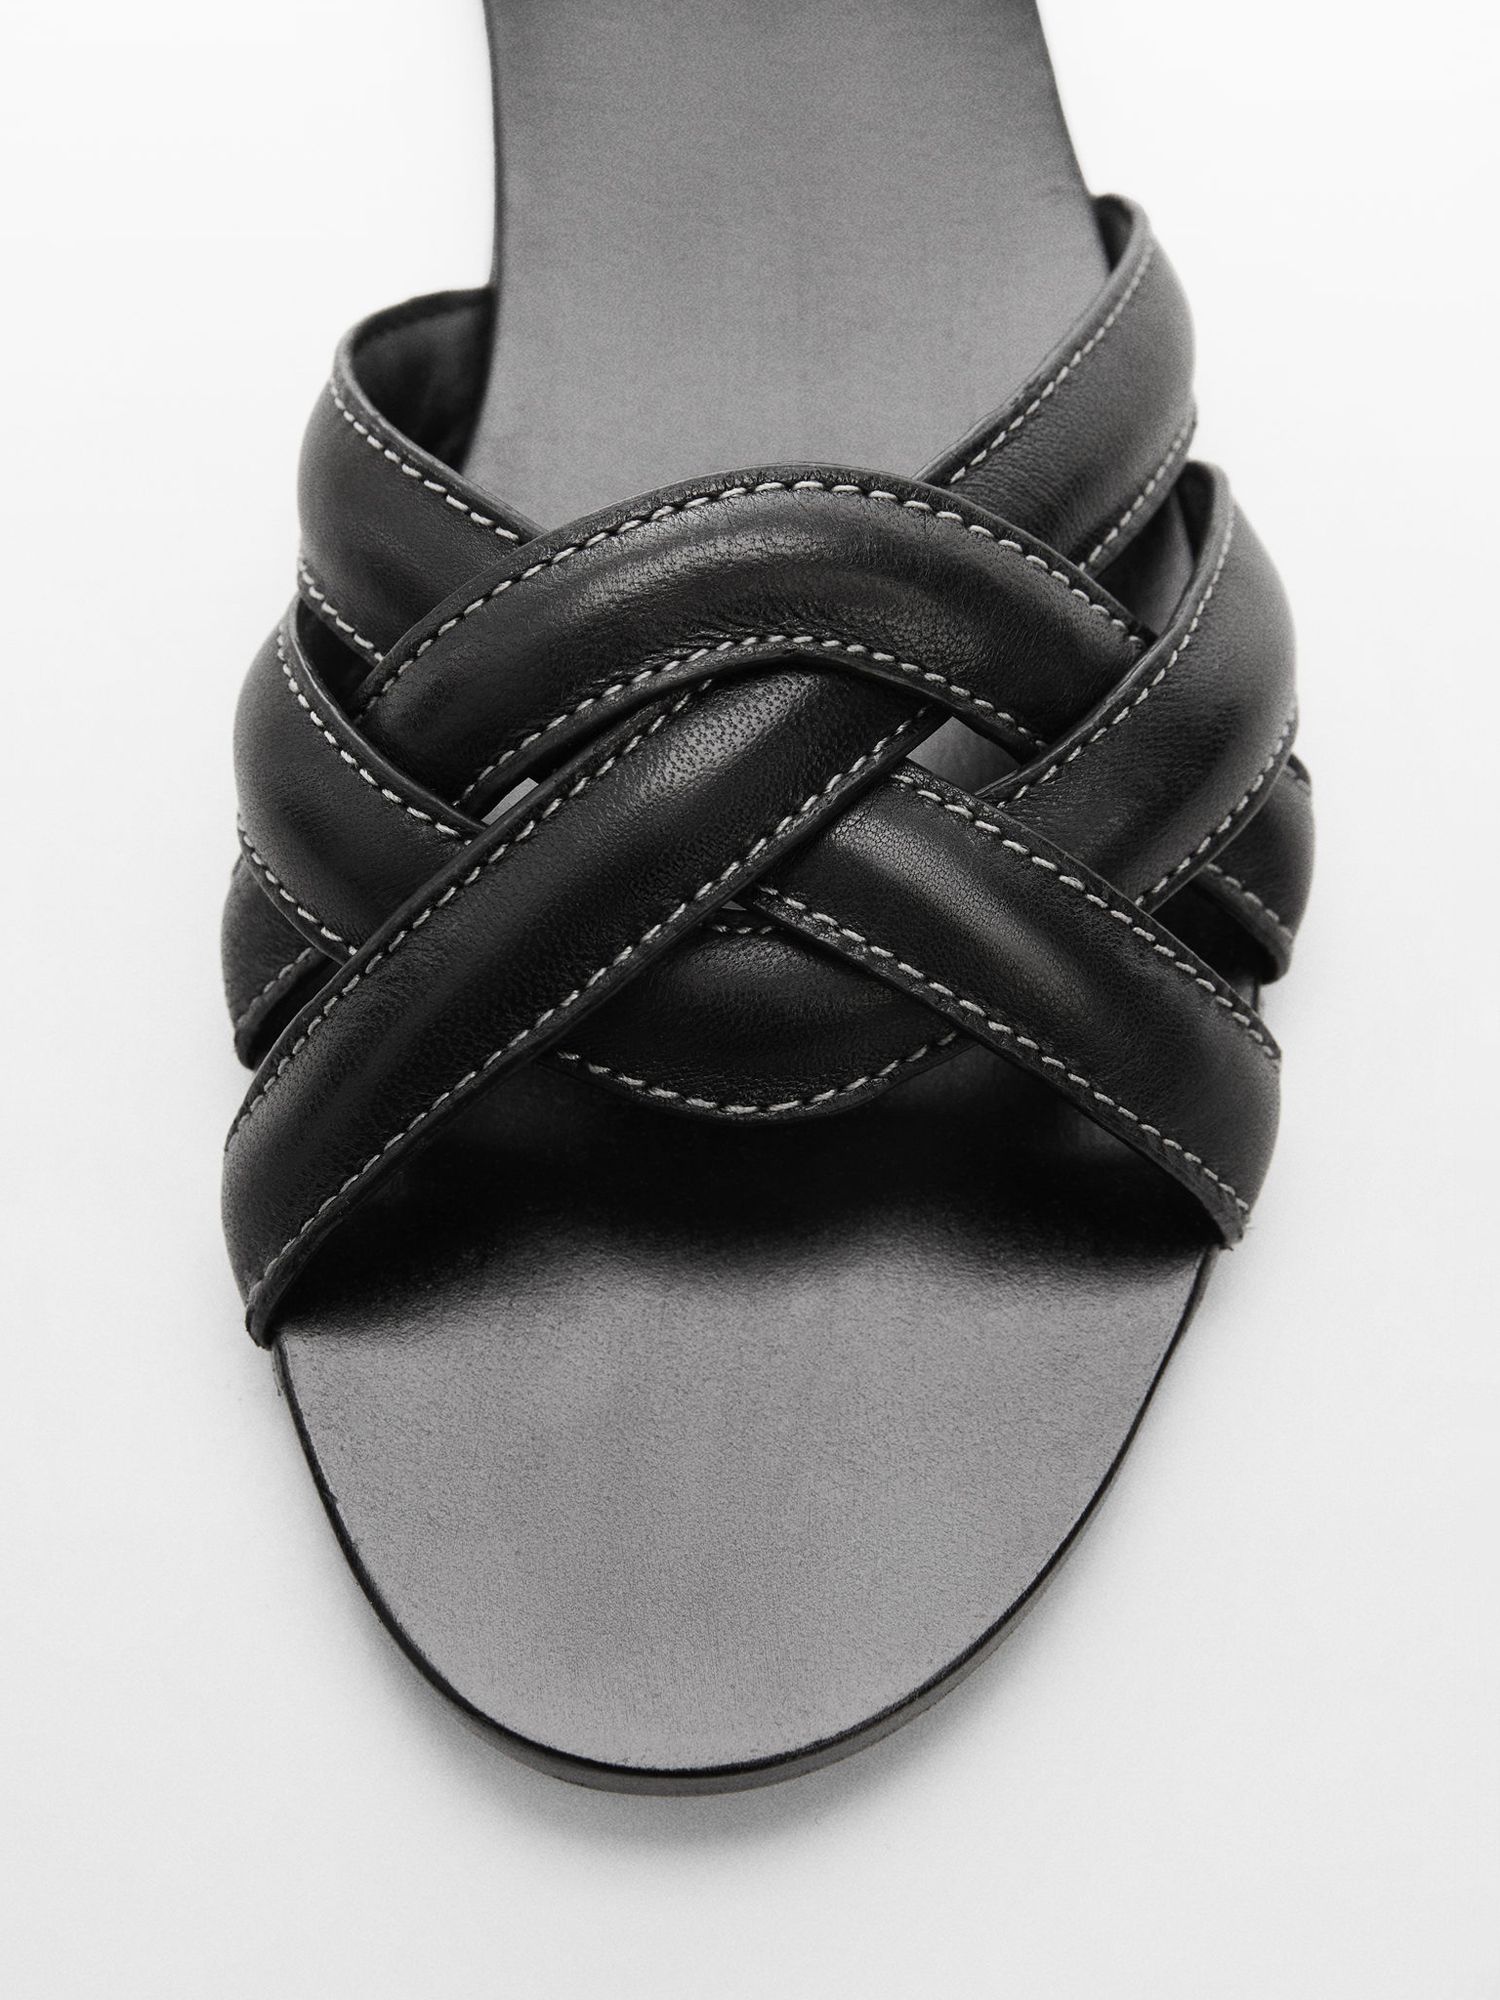 Buy Mango Doblet Cross Strap Leather Slider Sandals Online at johnlewis.com